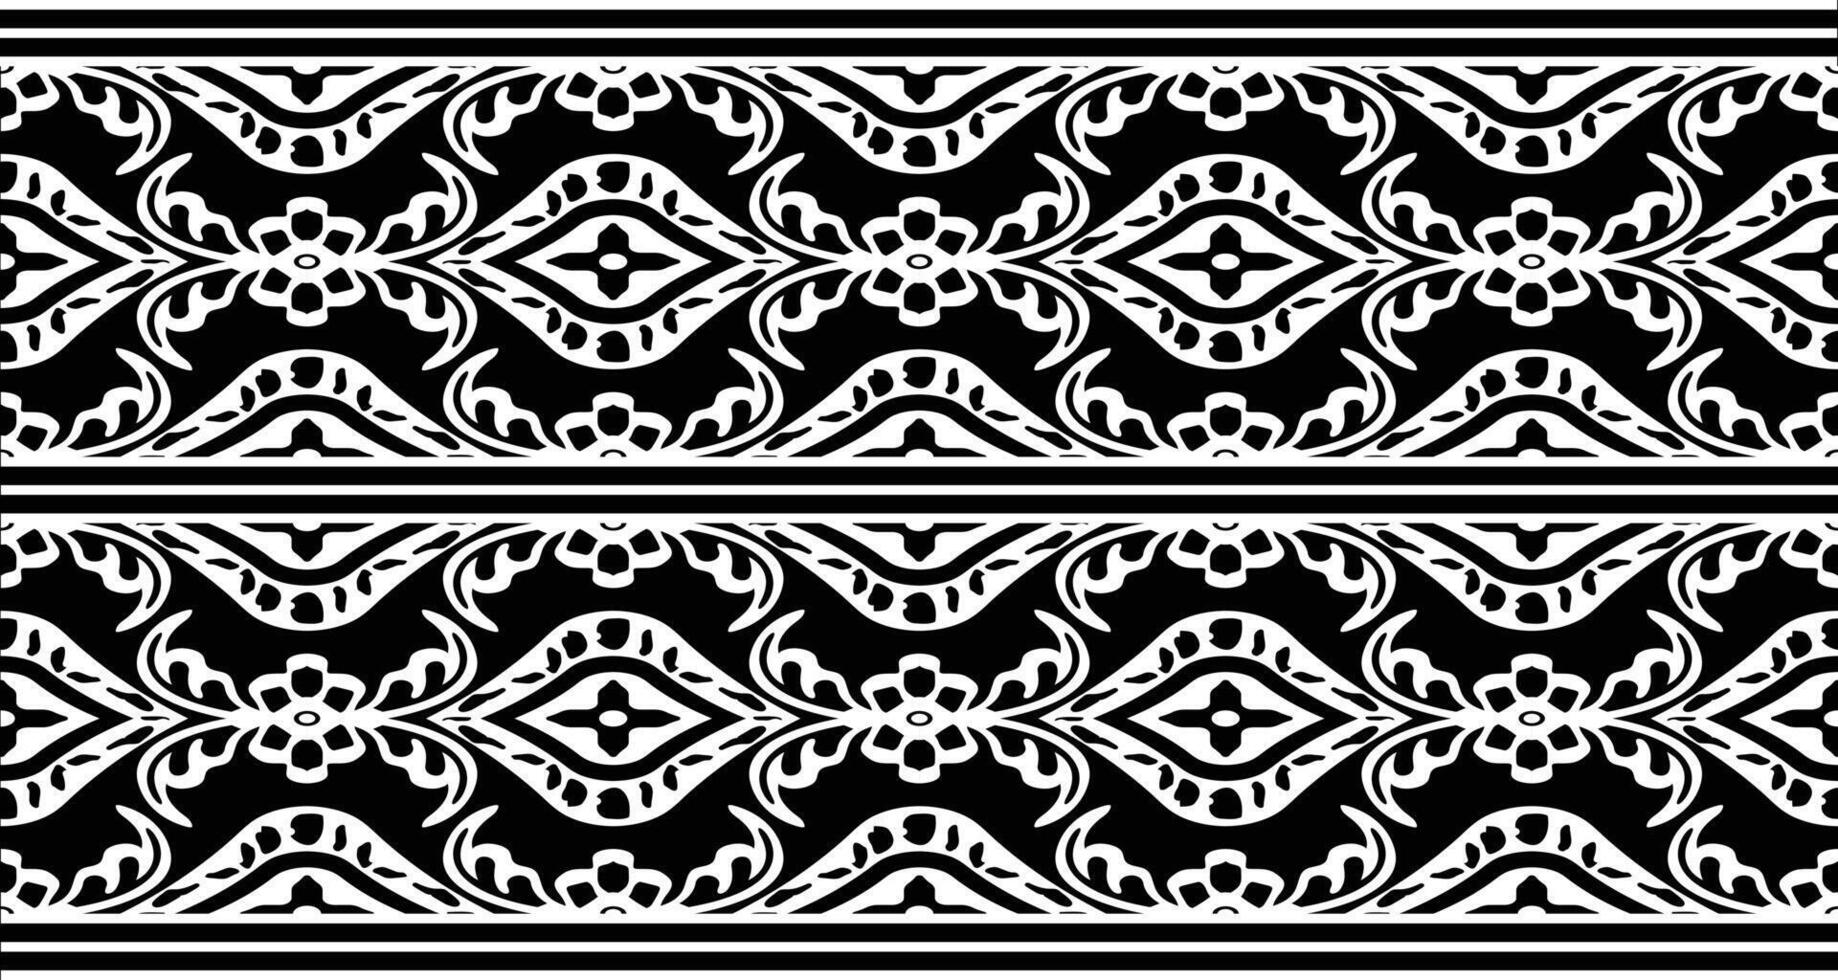 textil- tyg gräns motiv mönster för en geometrisk orientalisk sömlös mönster. gräns dekoration. design för bakgrund, tapet, vektor illustration, textil, batik, matta, tyg, Kläder